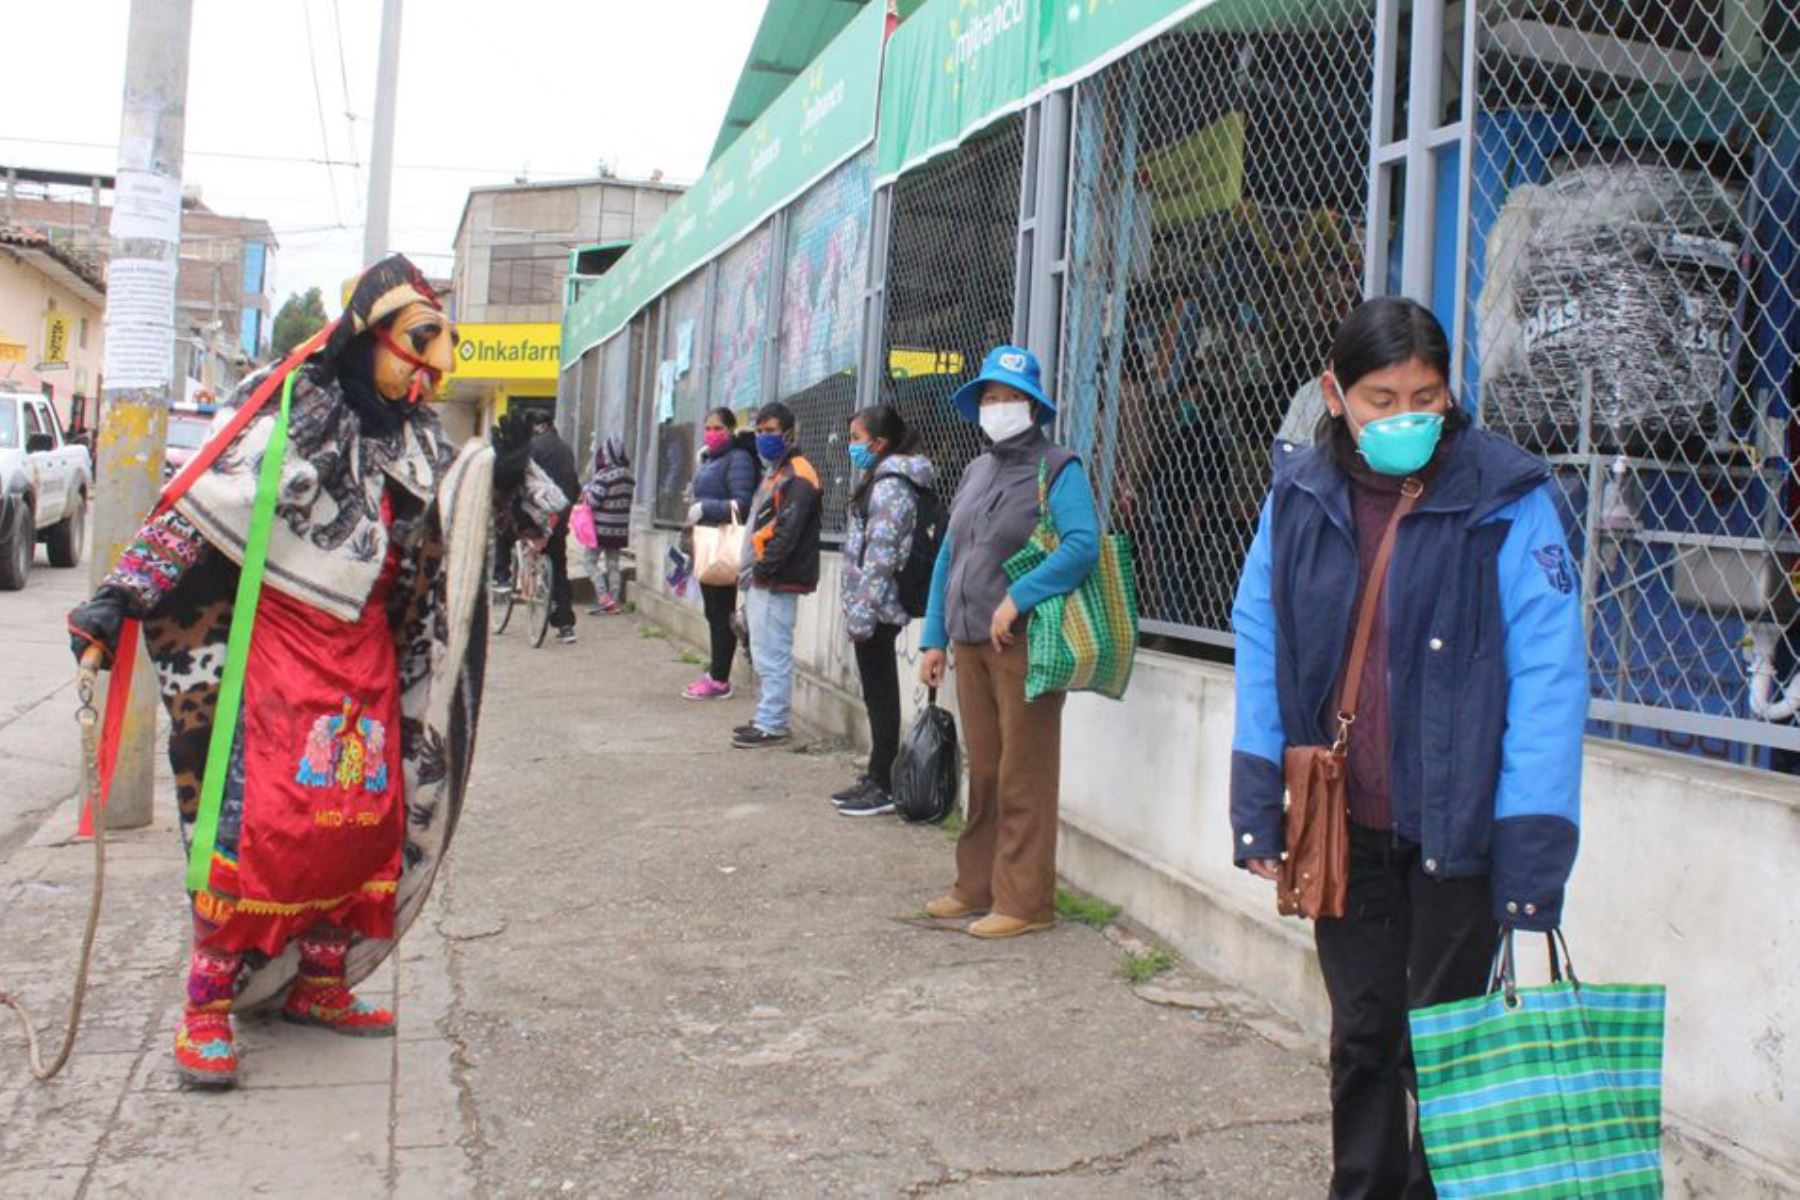 Los huacones salieron a las calles de la provincia de Concepción, región Junín, para hacer cumplir el aislamiento social obligatorio.